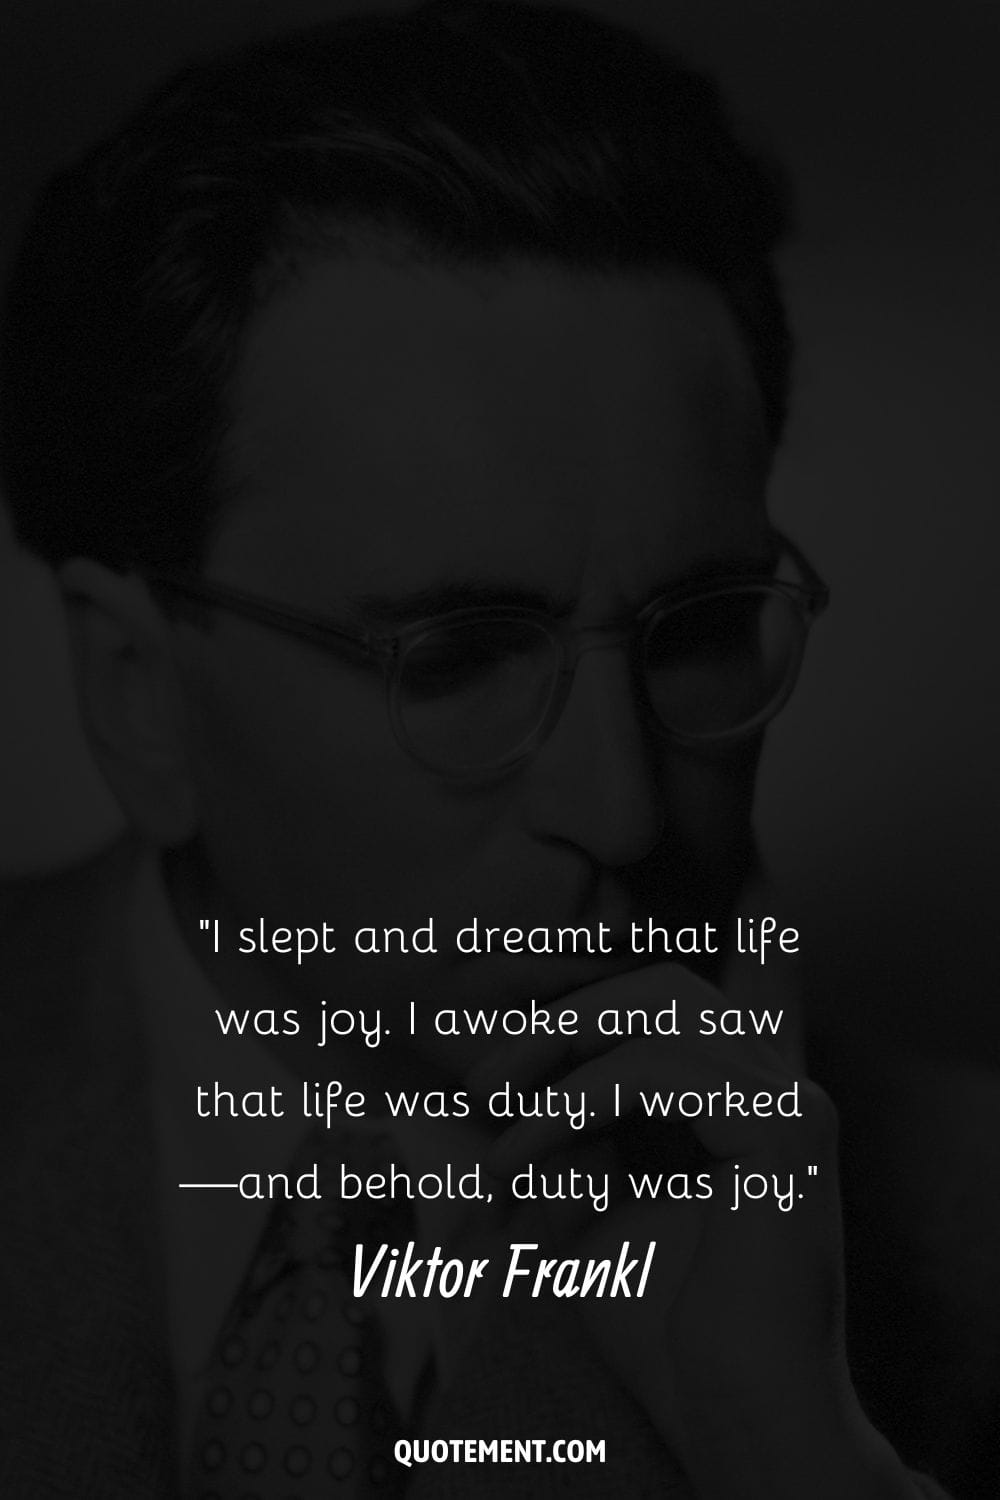 Imagen de Viktor Frankl representando su cita sobre la alegría.